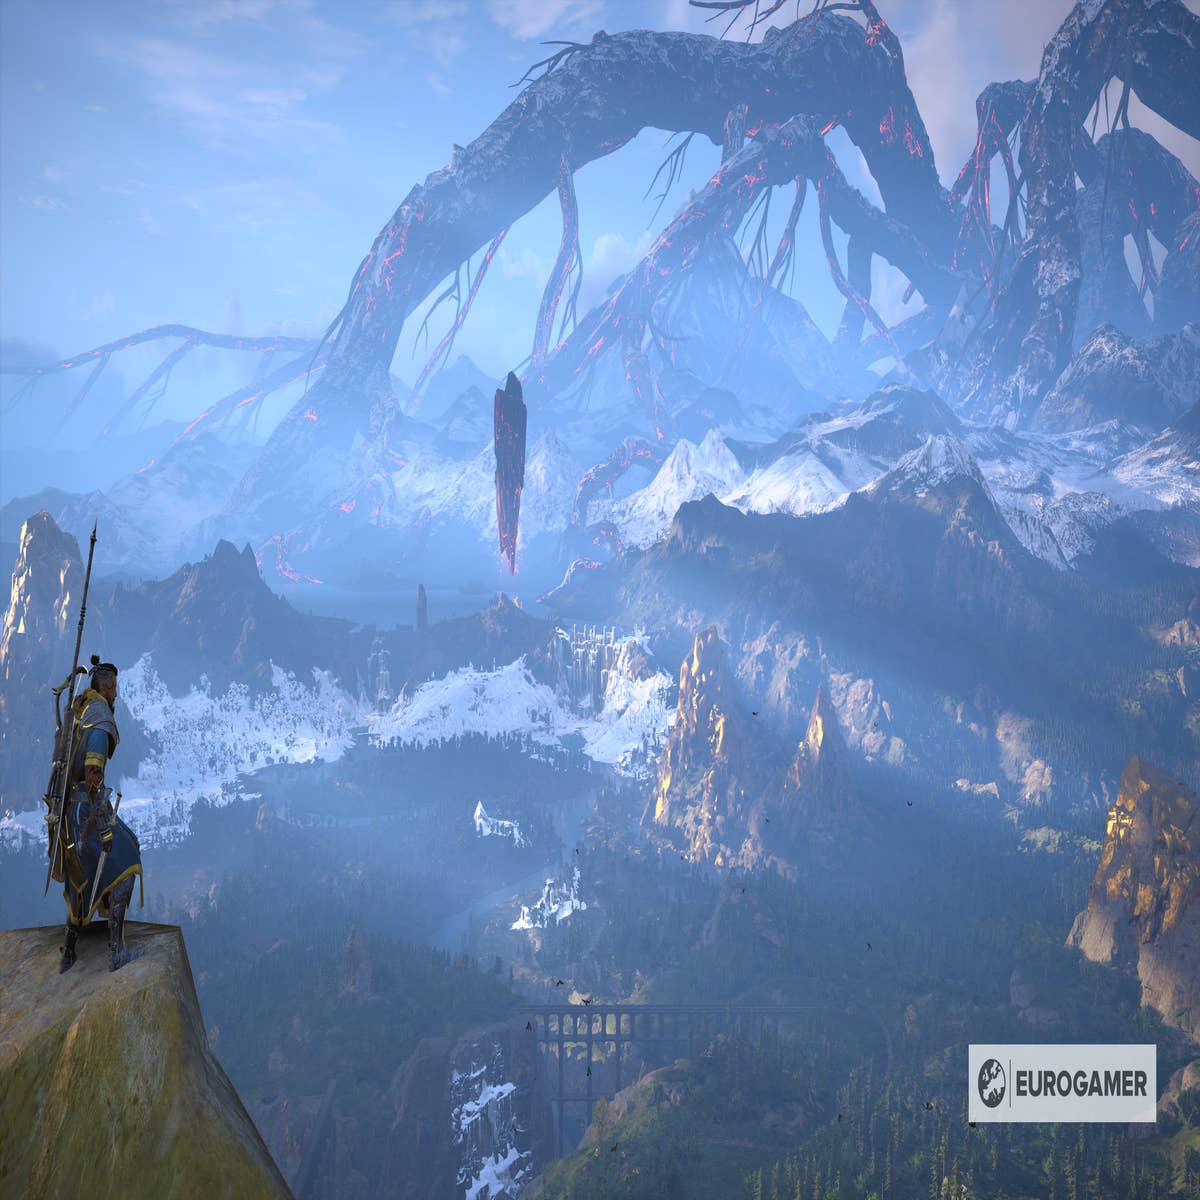 Assassin's Creed Valhalla - Dawn of Ragnarok Expansion